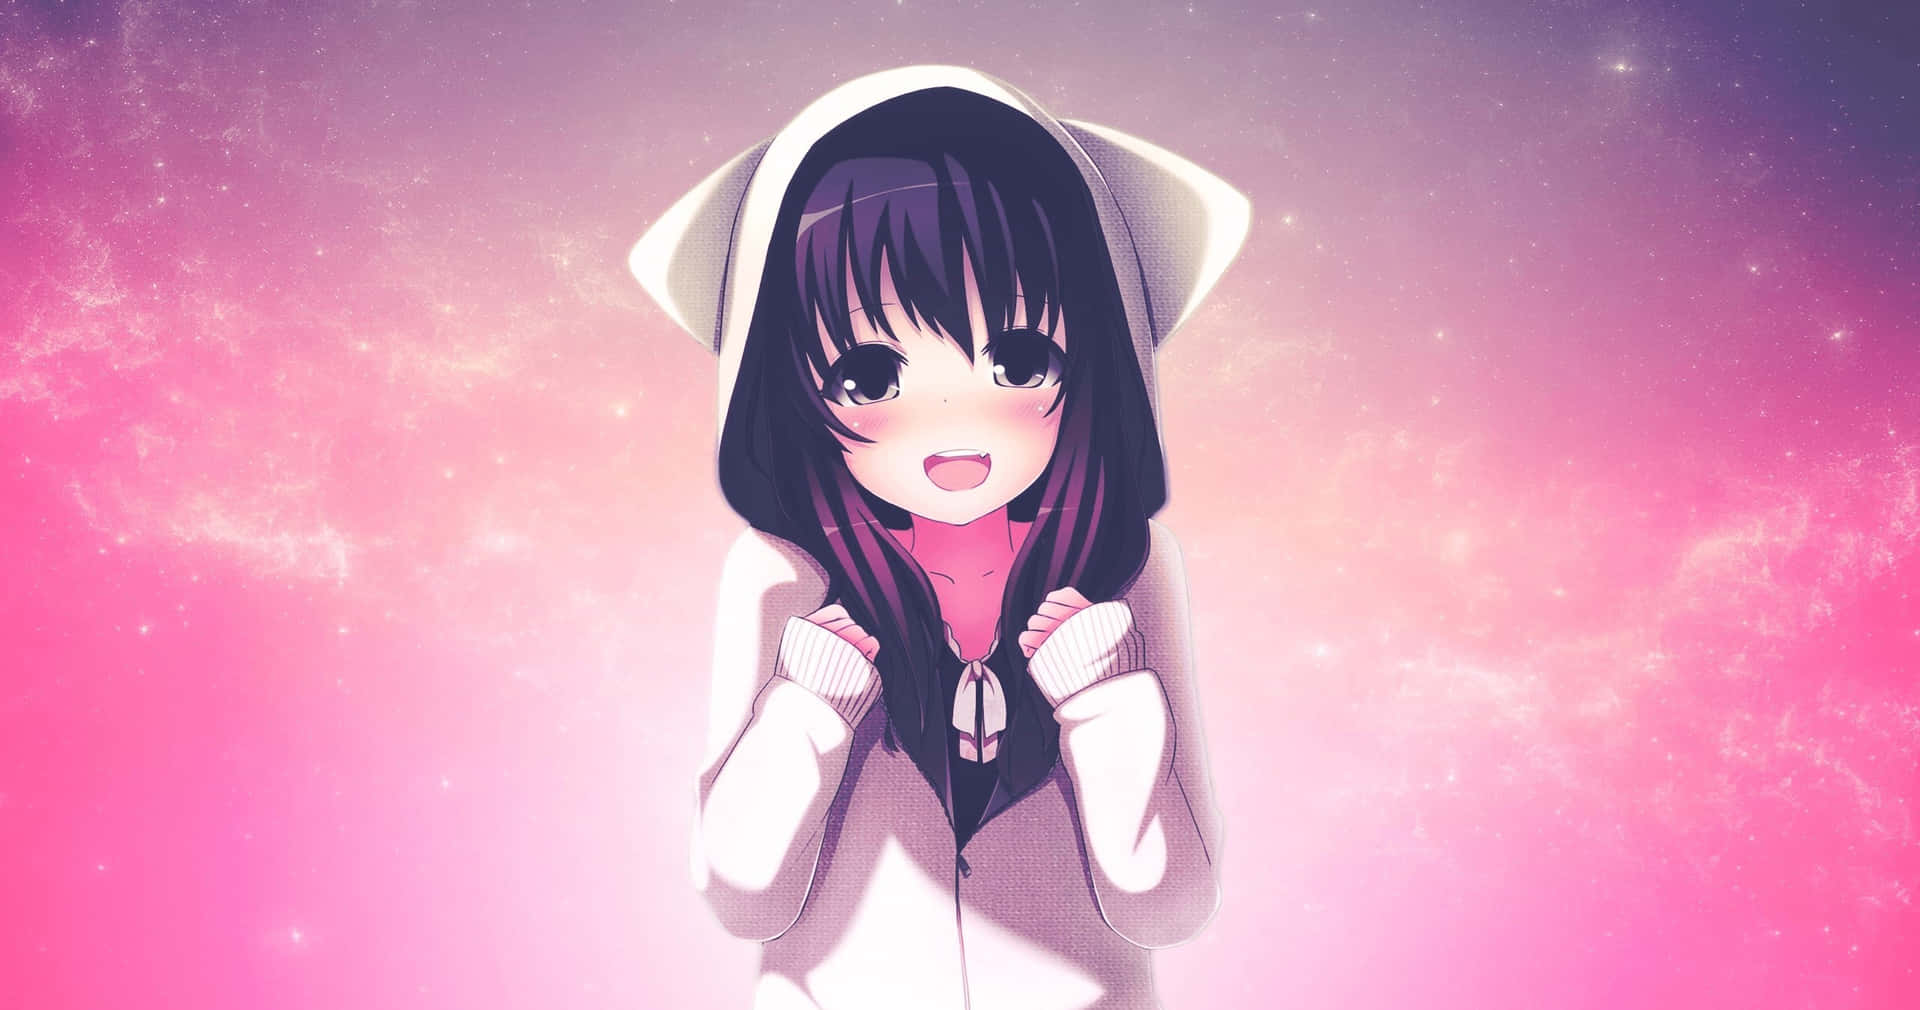 Anime Neko Girl Pink Backdrop Background